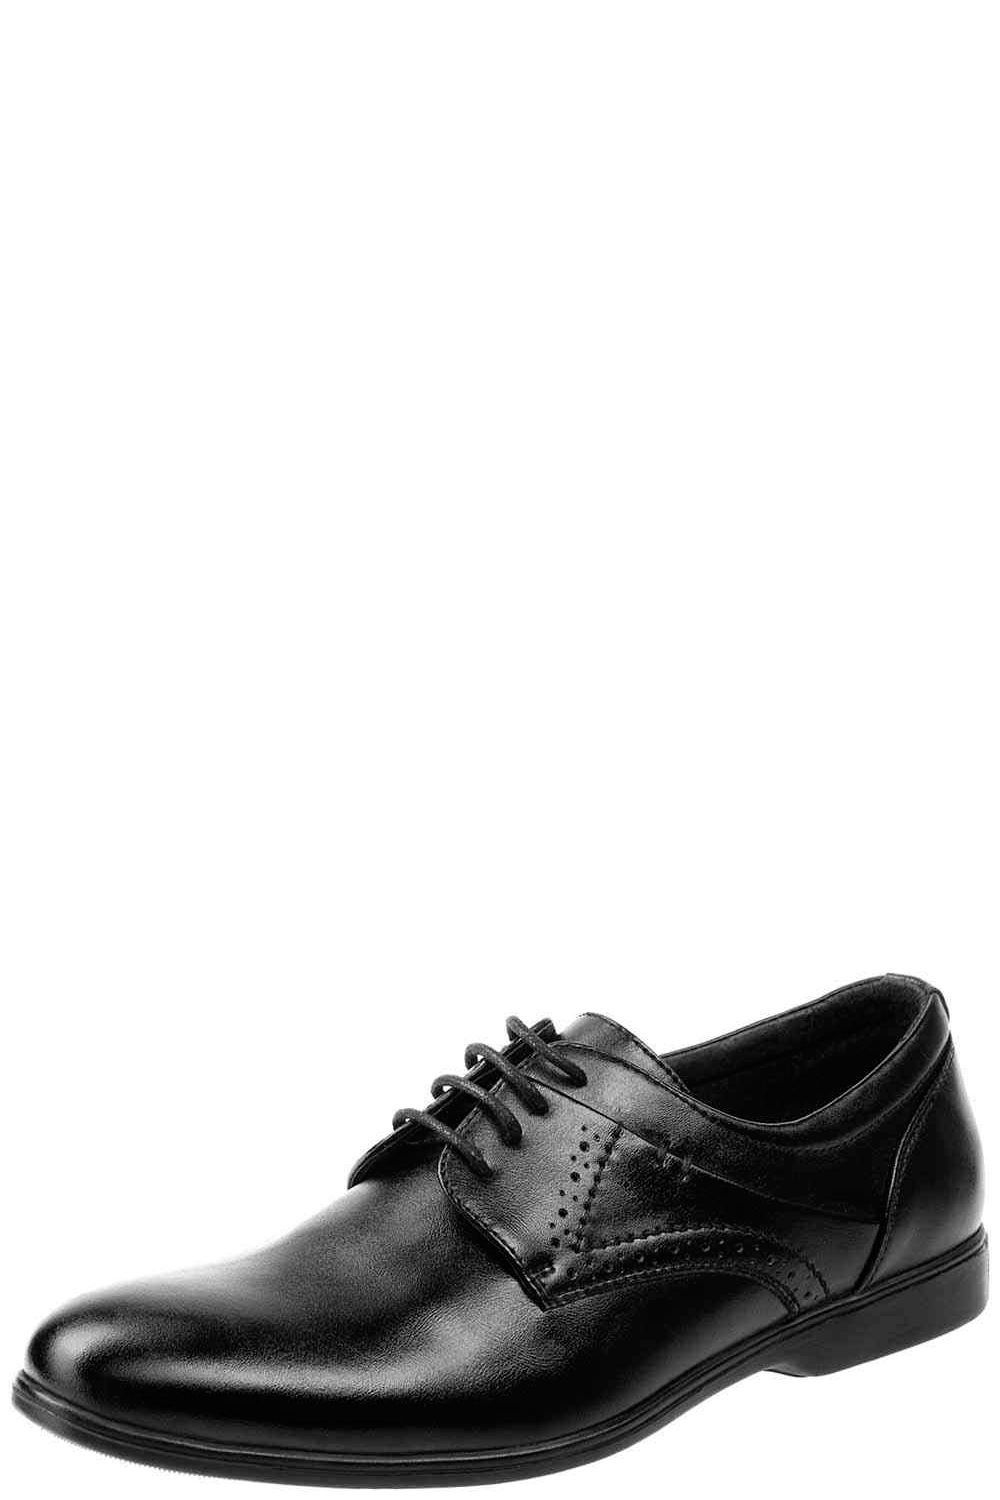 Туфли Keddo, размер 37, цвет черный